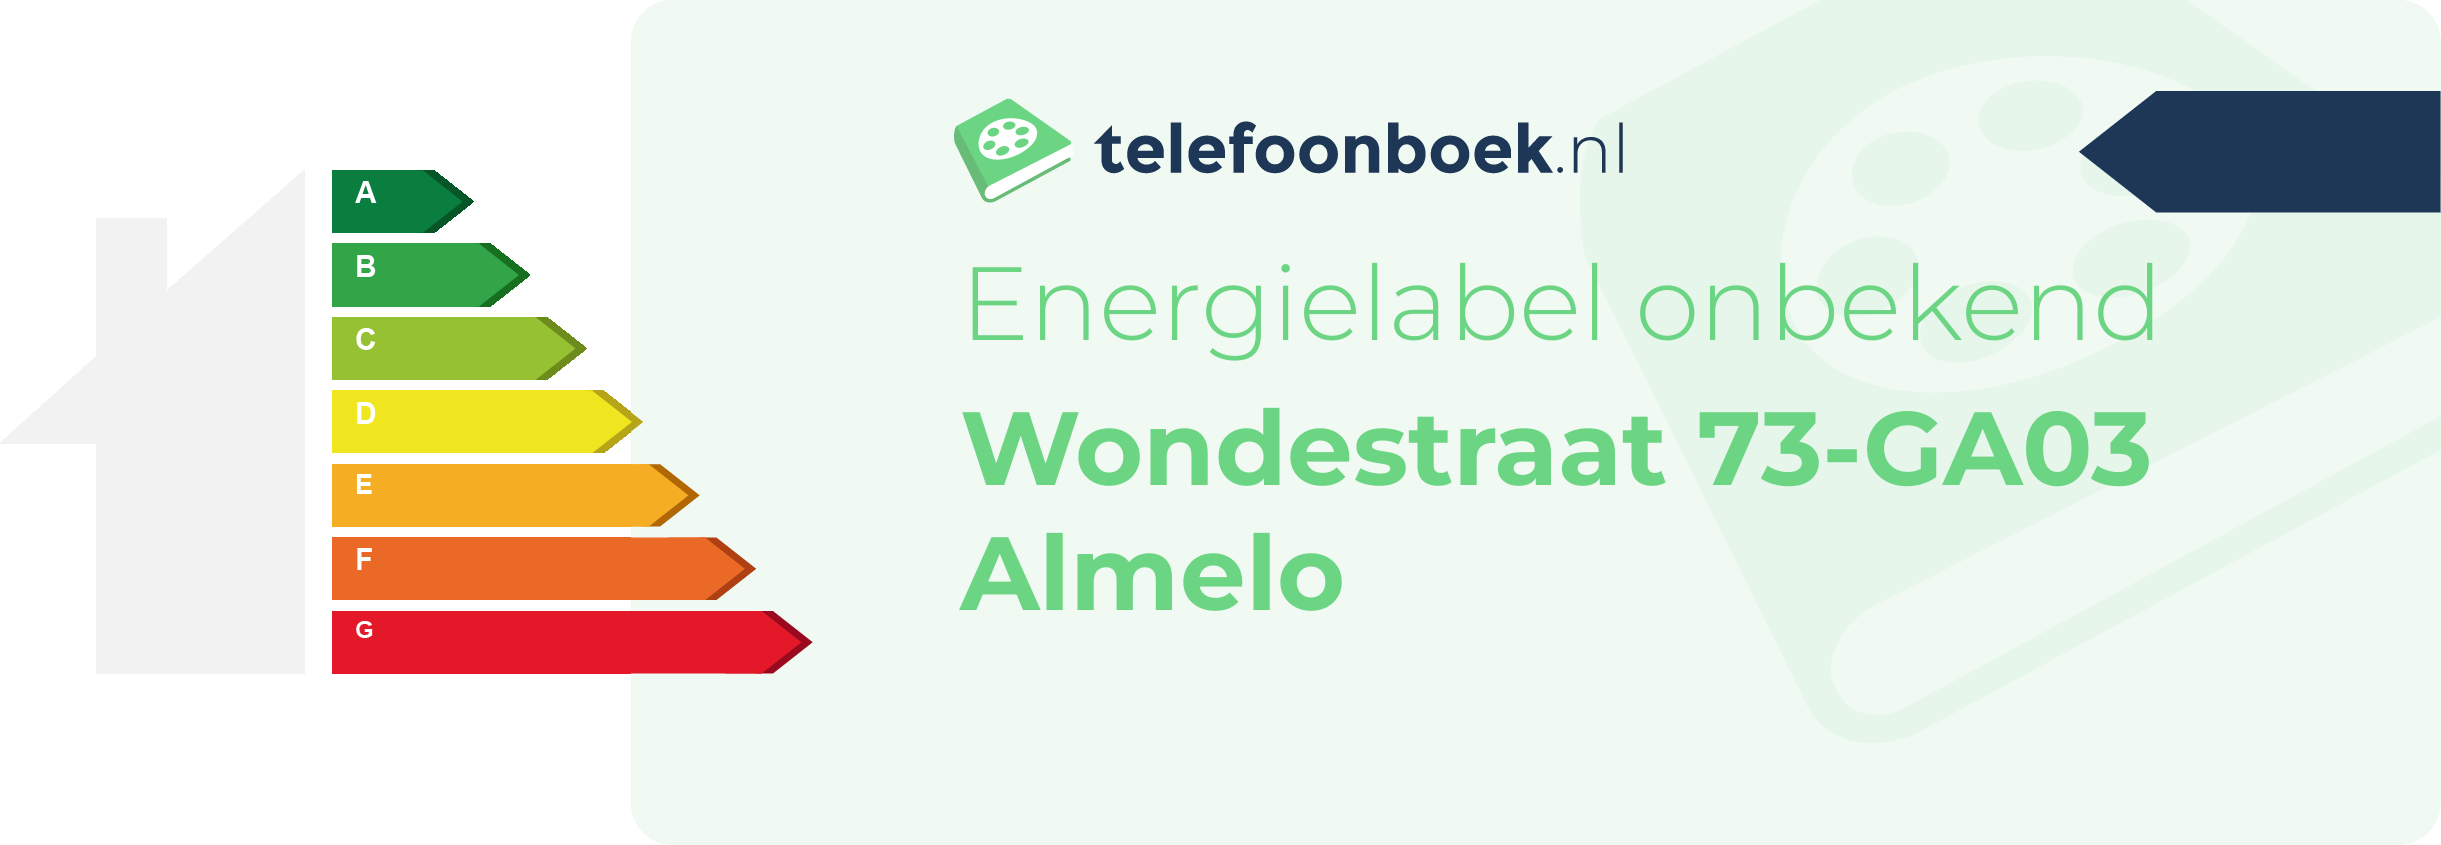 Energielabel Wondestraat 73-GA03 Almelo